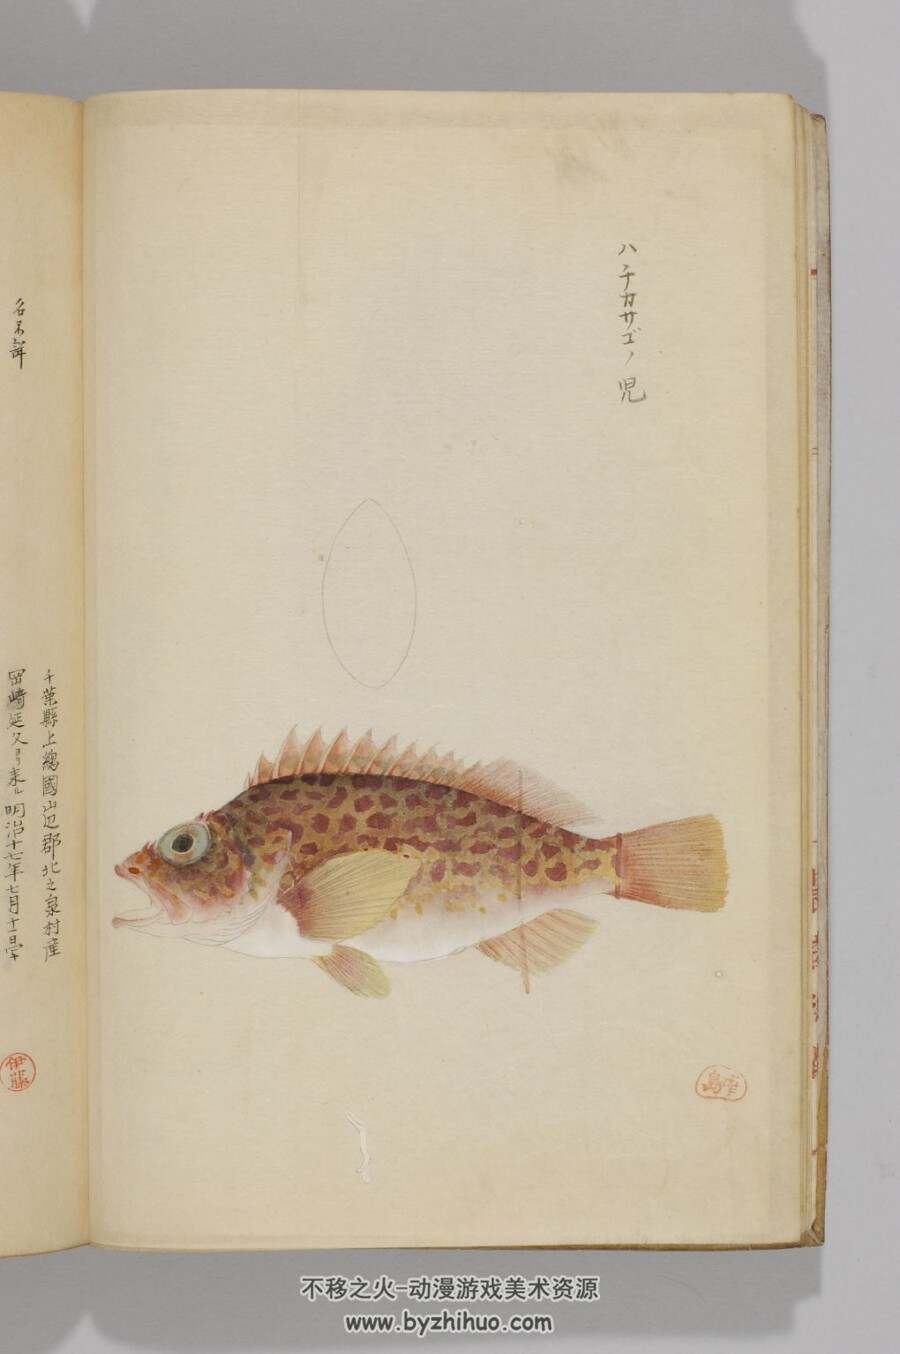 日本帝室博物馆编-鱼谱图 鱼类图谱绘画作品赏析 pdf百度网盘分享